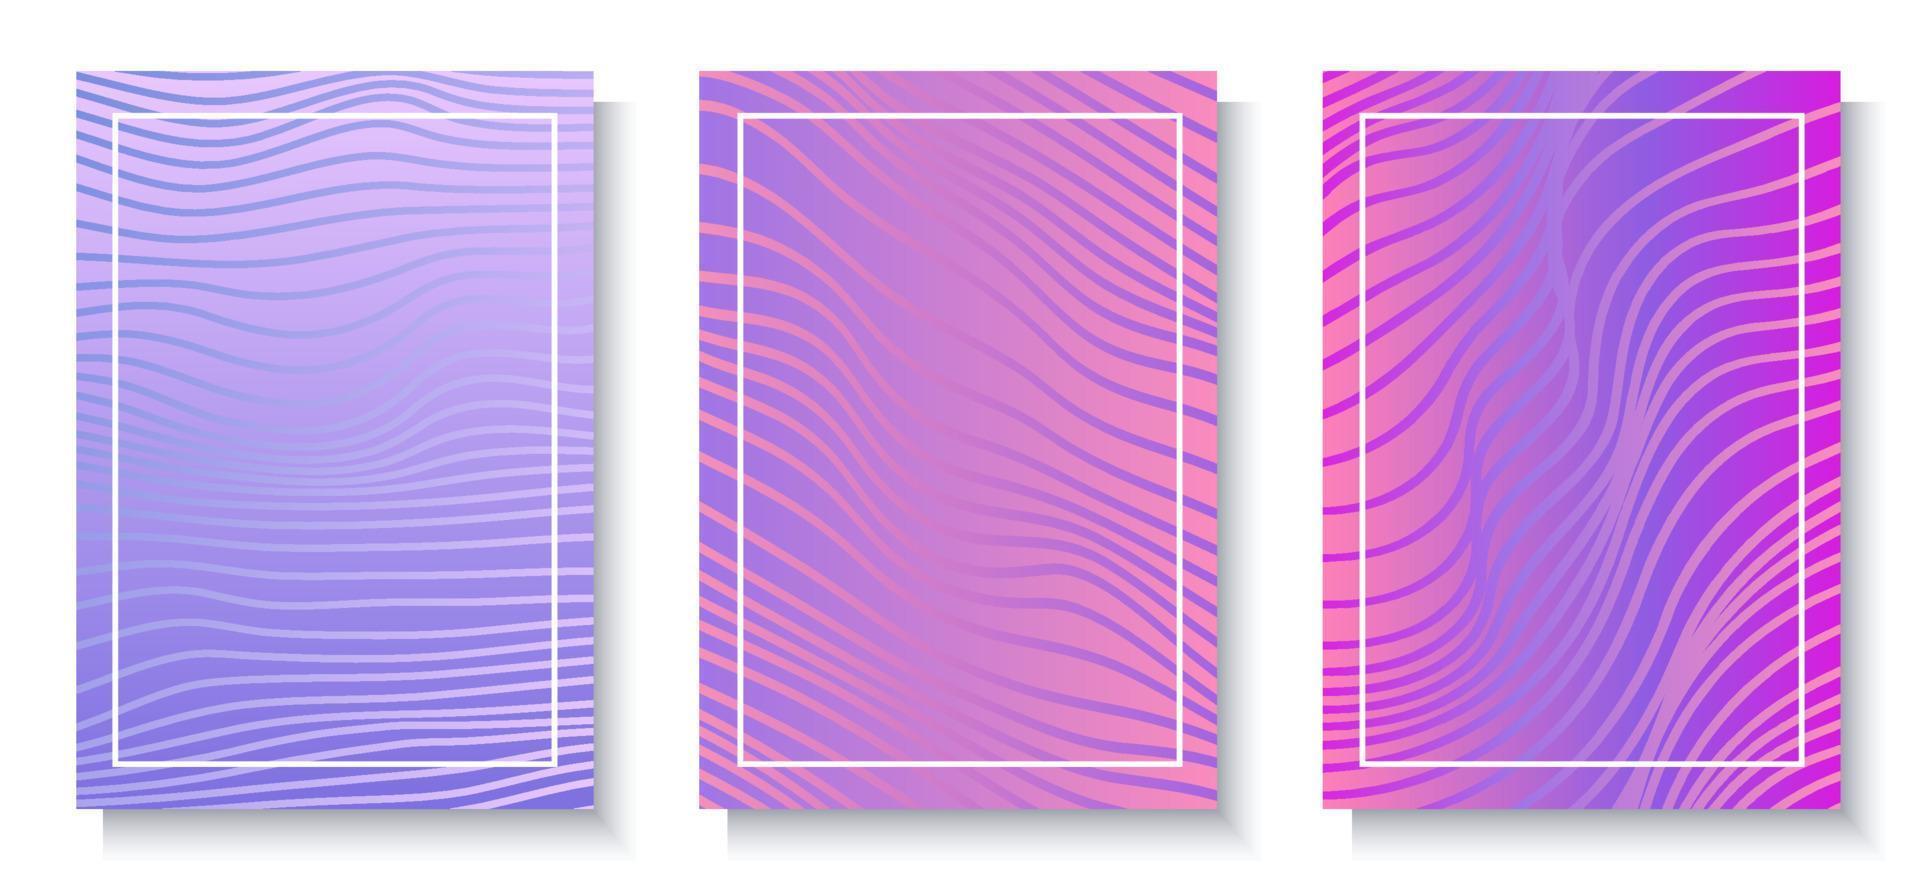 abstratos fundos vetoriais vibrantes com padrão ondulado, em cores gradientes rosa e roxo. tom de tela de ondas desbotadas. vetor